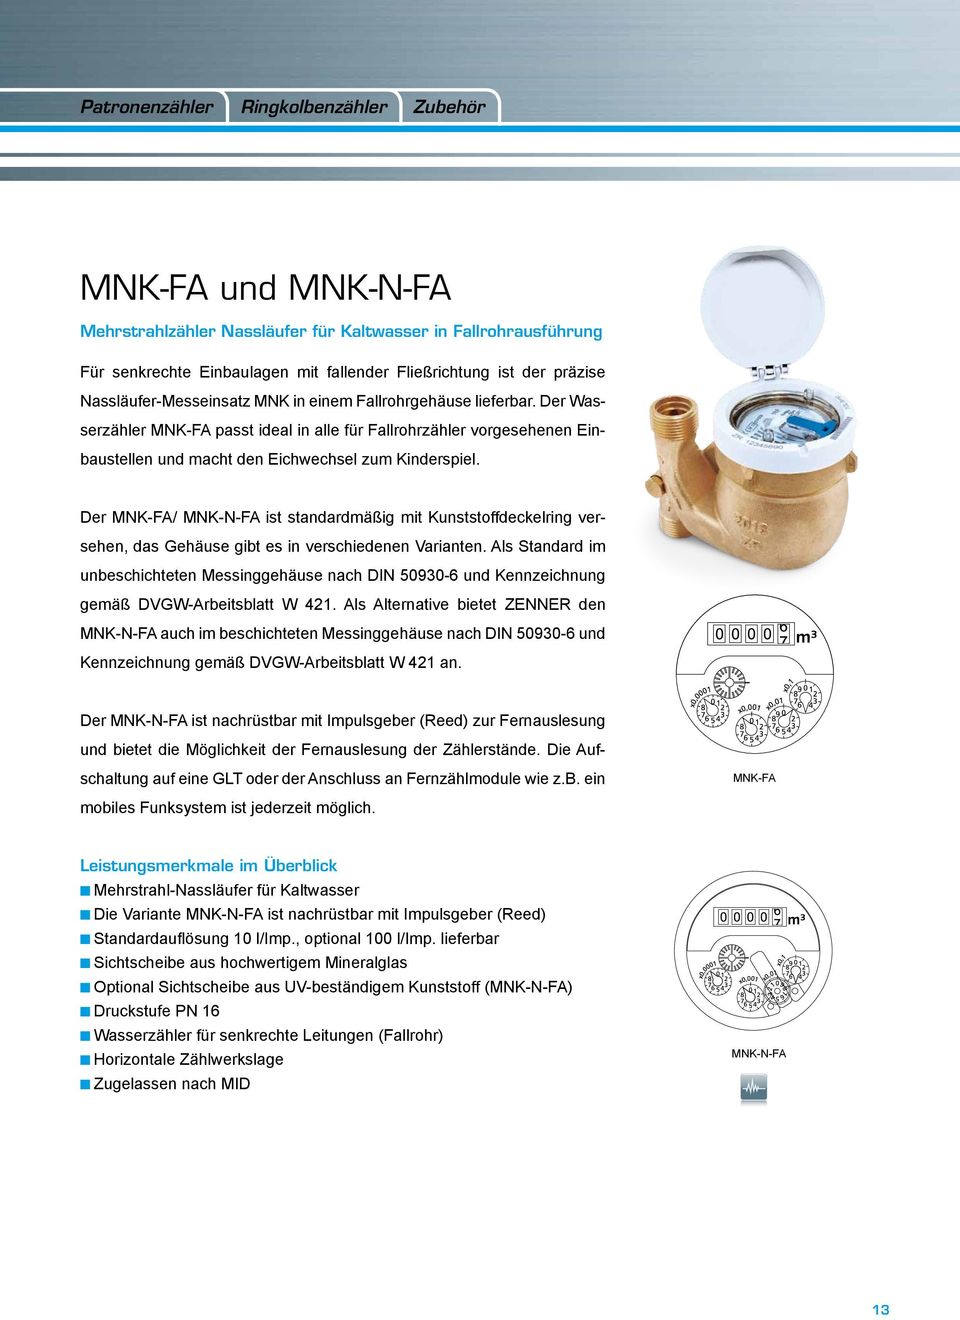 Der MNK-FA/ MNK-N-FA ist standardmäßig mit Kunststoffdeckelring versehen, das Gehäuse gibt es in verschiedenen Varianten.